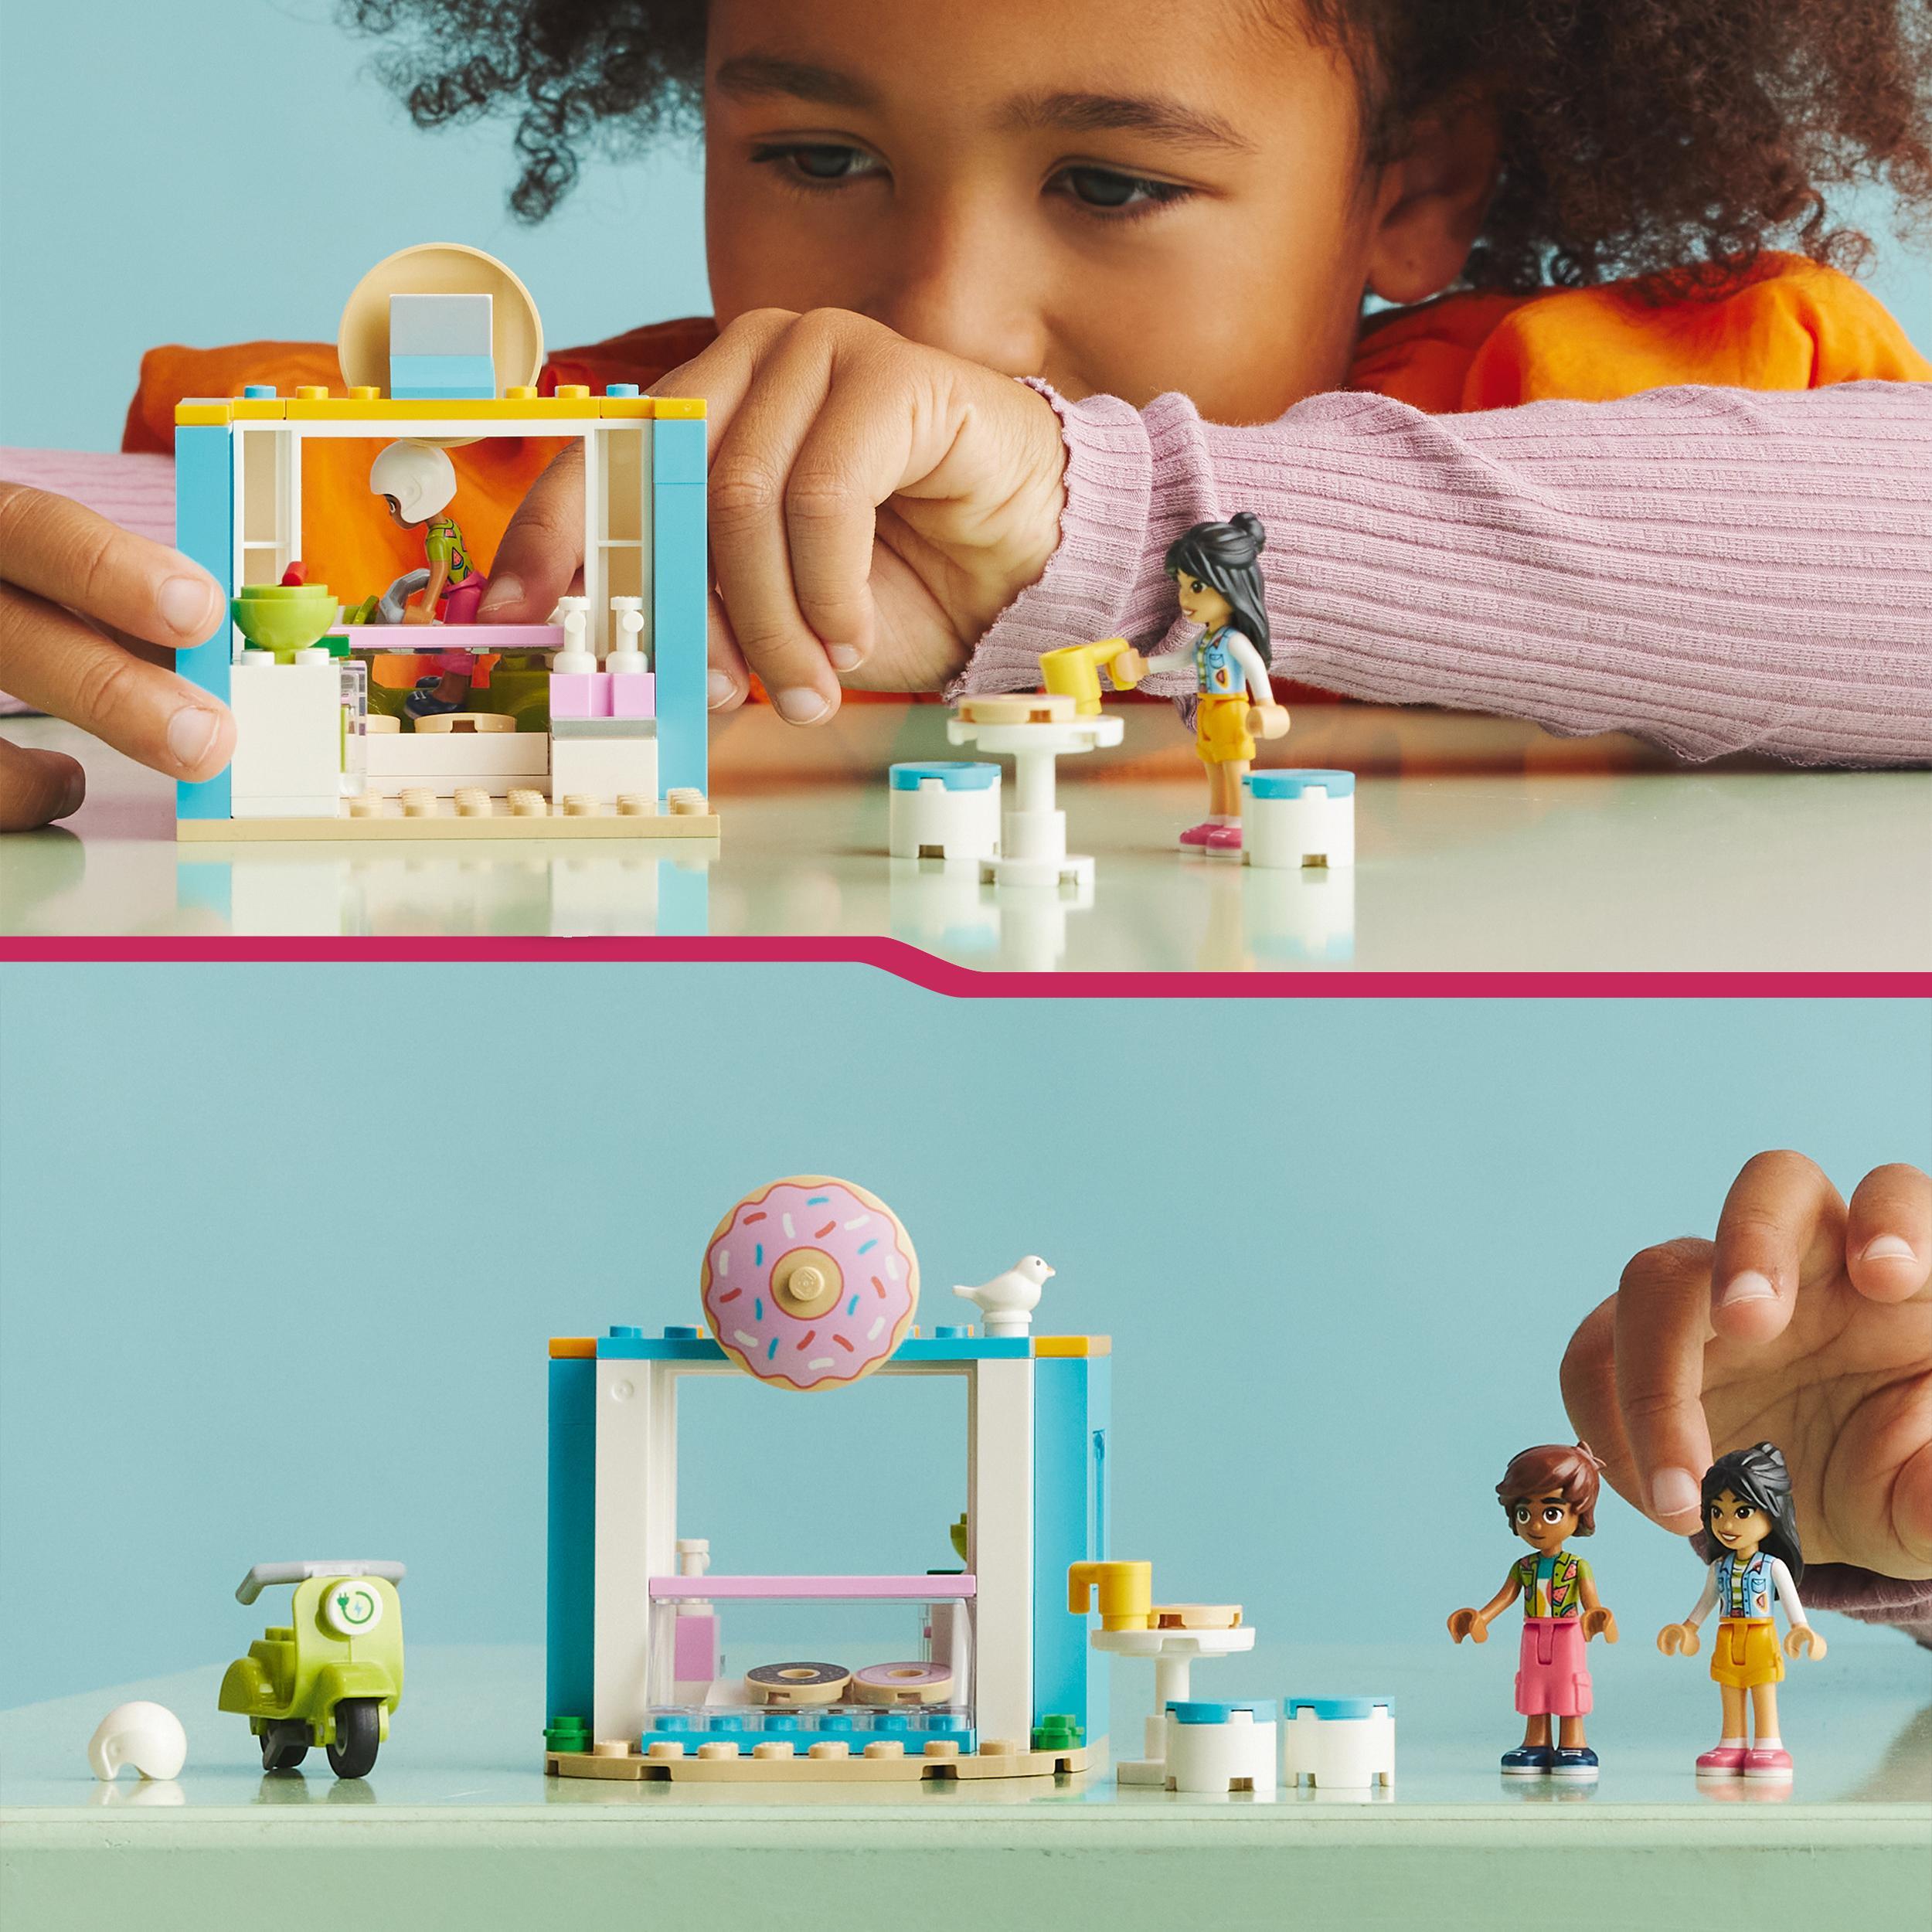 Lego friends 41723 negozio di ciambelle, giochi per bambini 4+ anni con mini bamboline liann e leo e scooter, idea regalo - LEGO FRIENDS